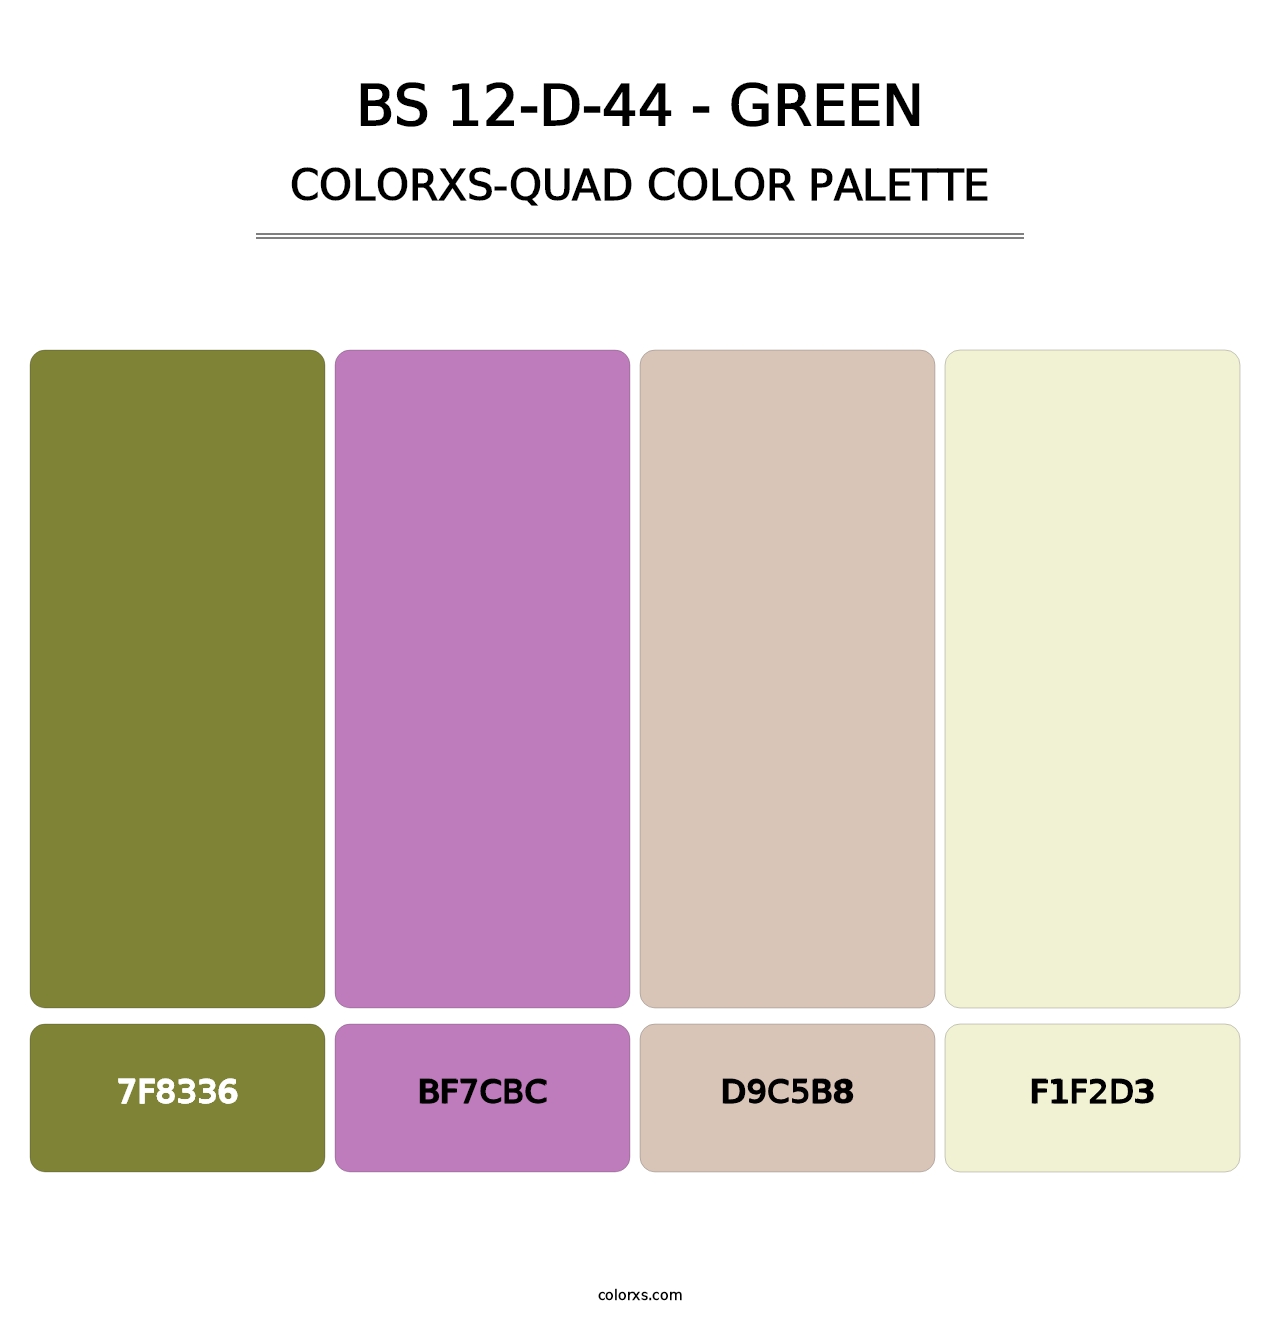 BS 12-D-44 - Green - Colorxs Quad Palette